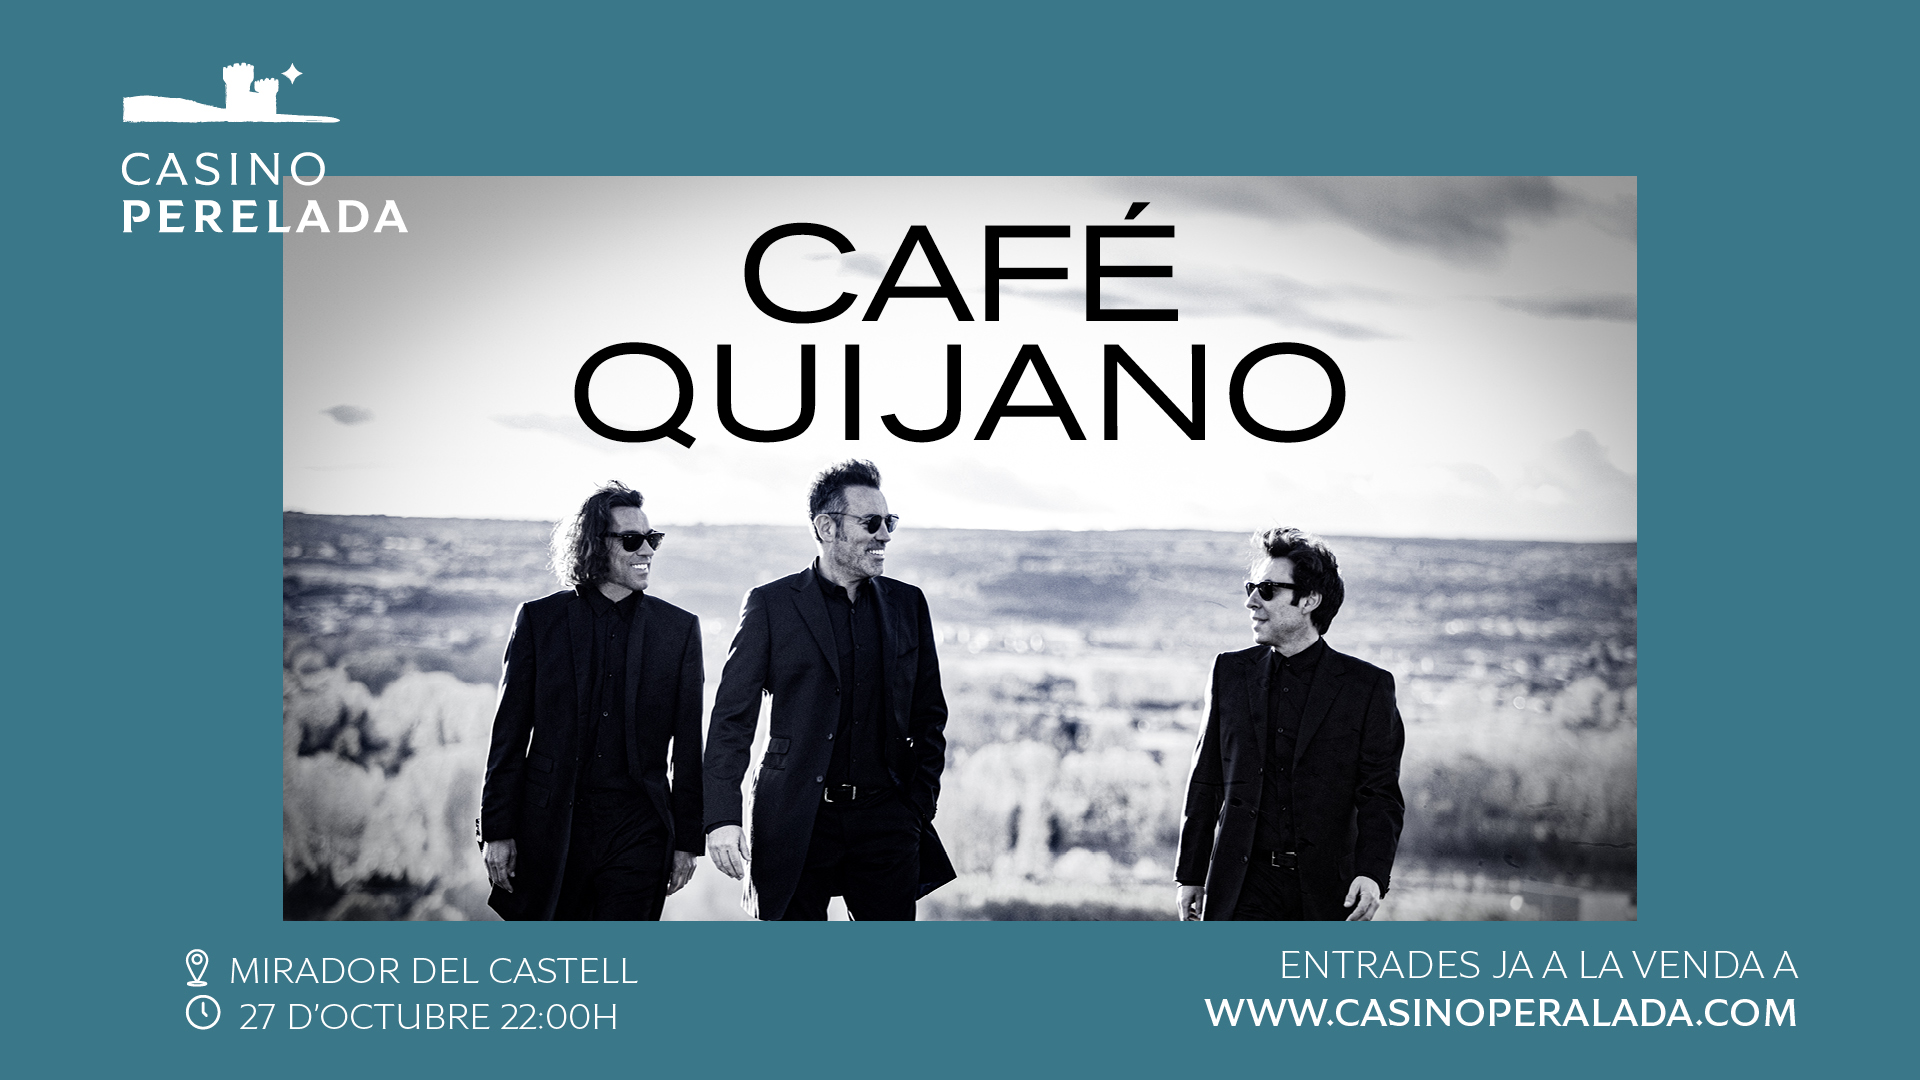 Café Quijano actuarà a Casino Perelada